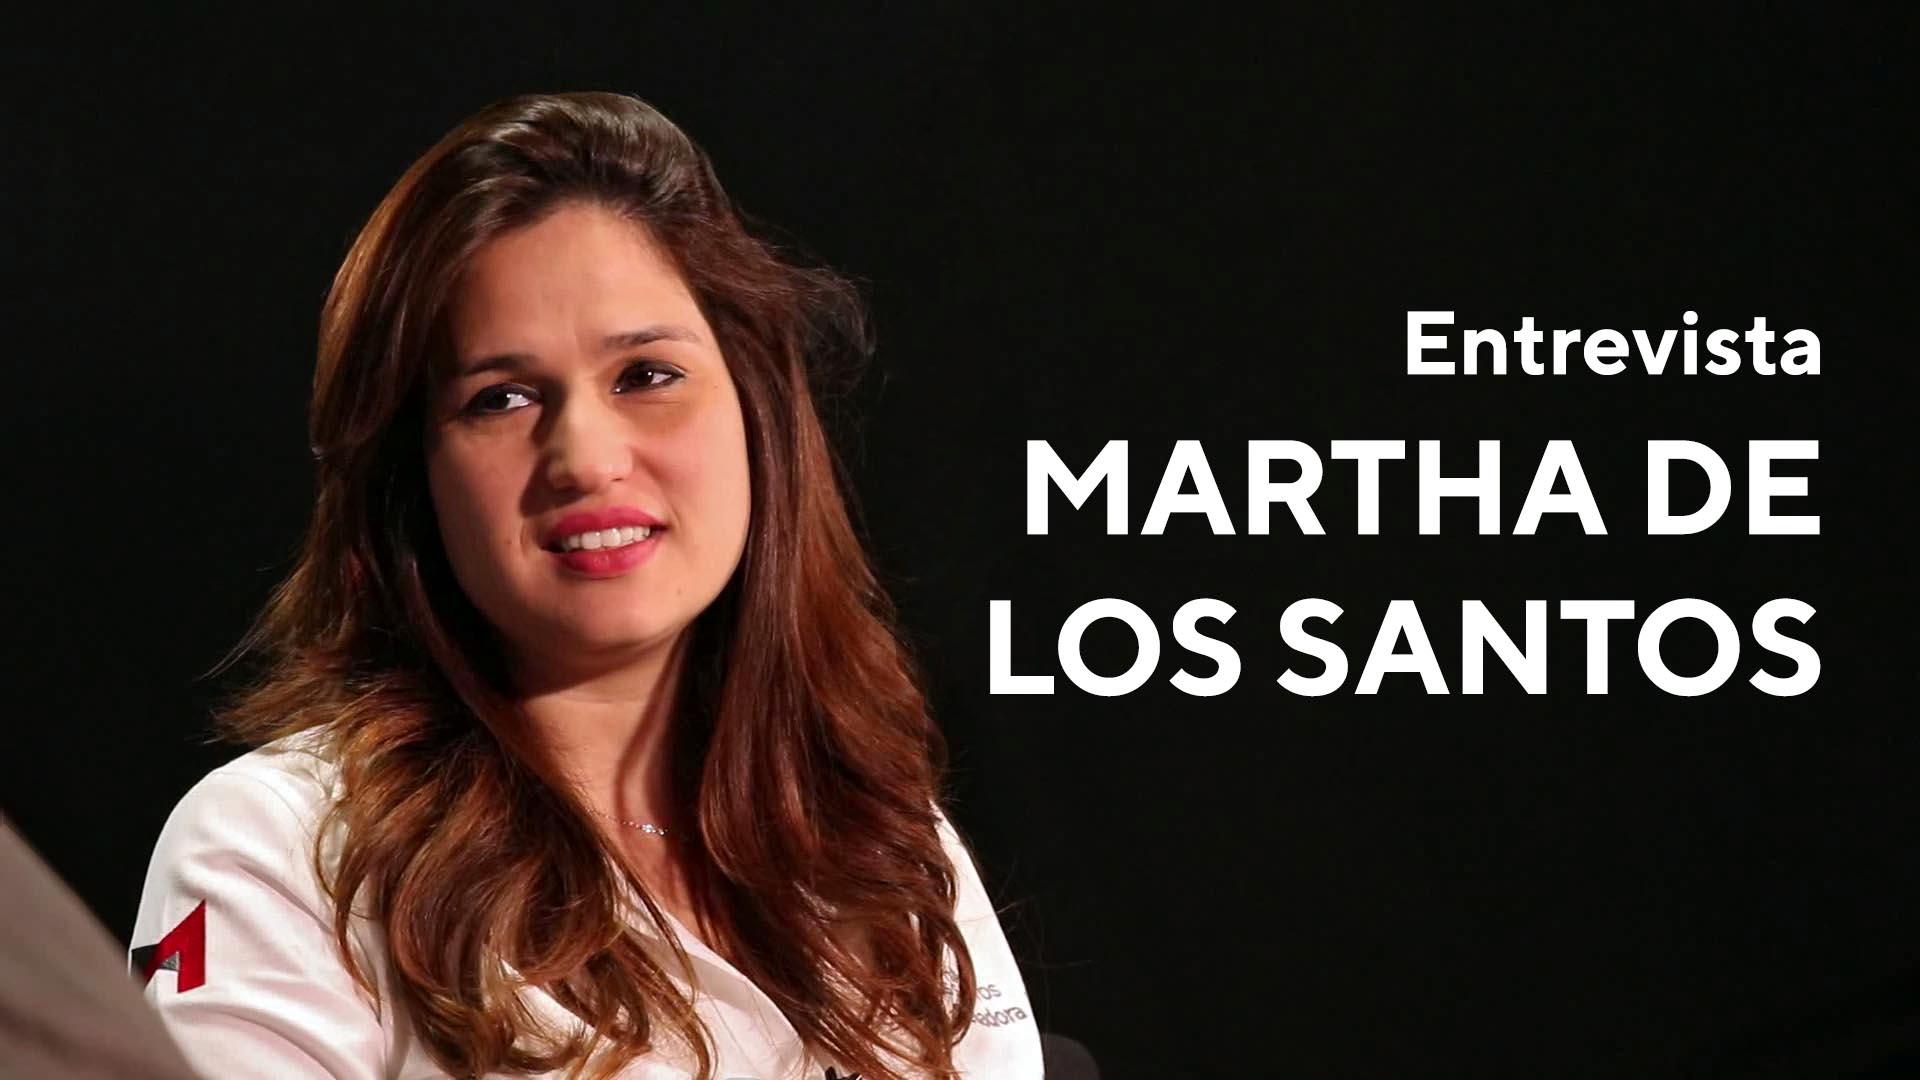 ENTREVISTA MARTHA DE LOS SANTOS